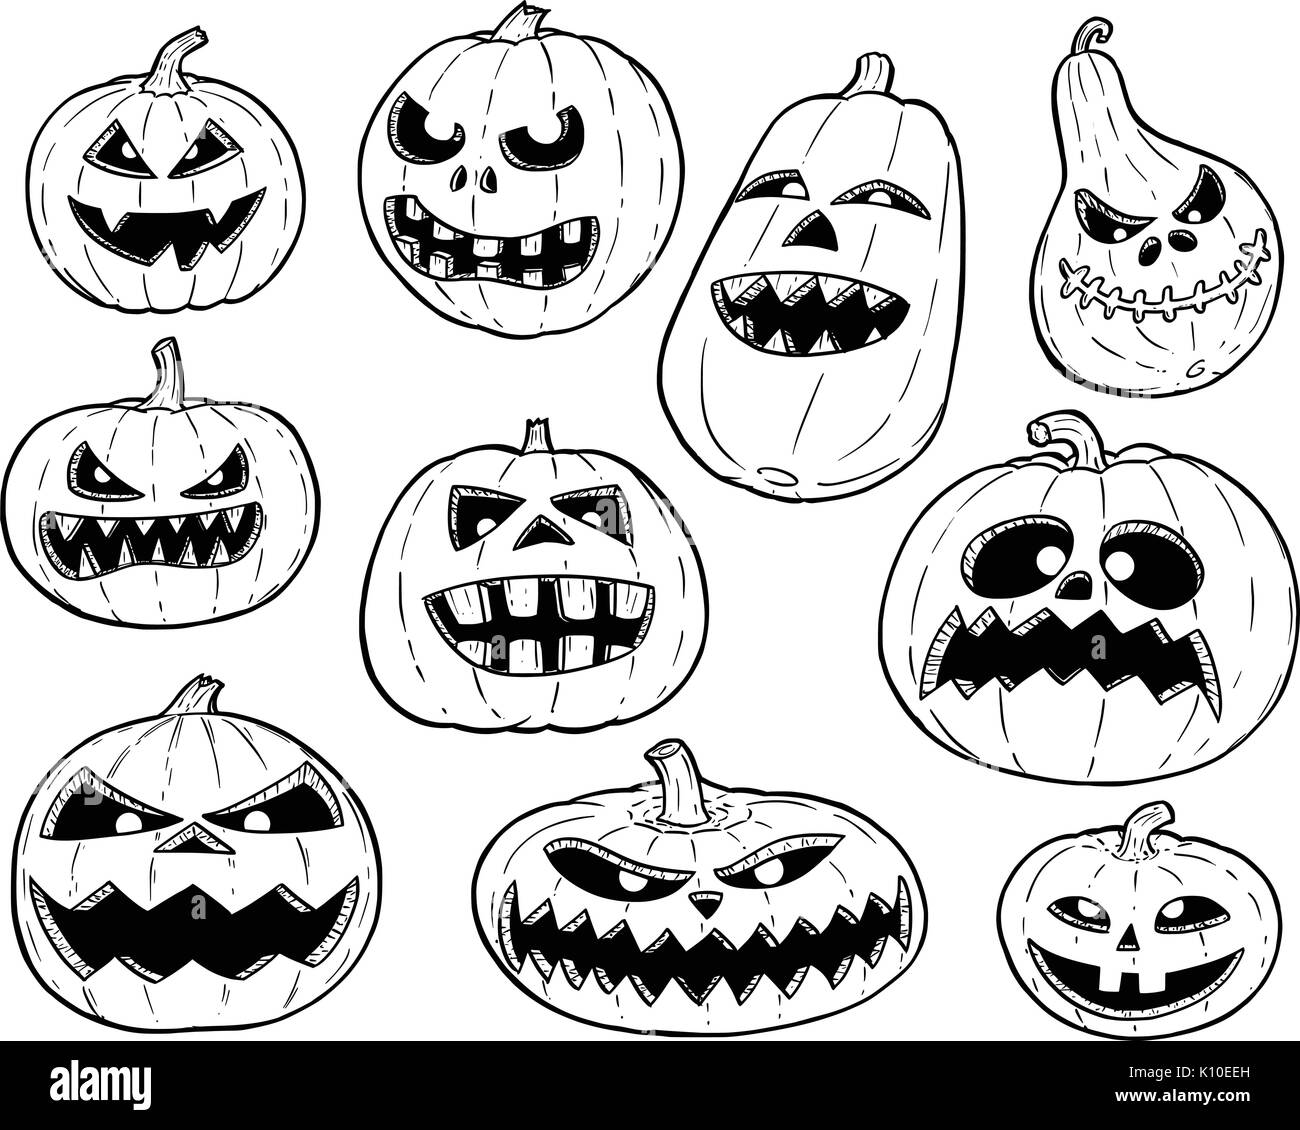 Jeu de cute dessin illustration de dessins de citrouille halloween. Illustration de Vecteur